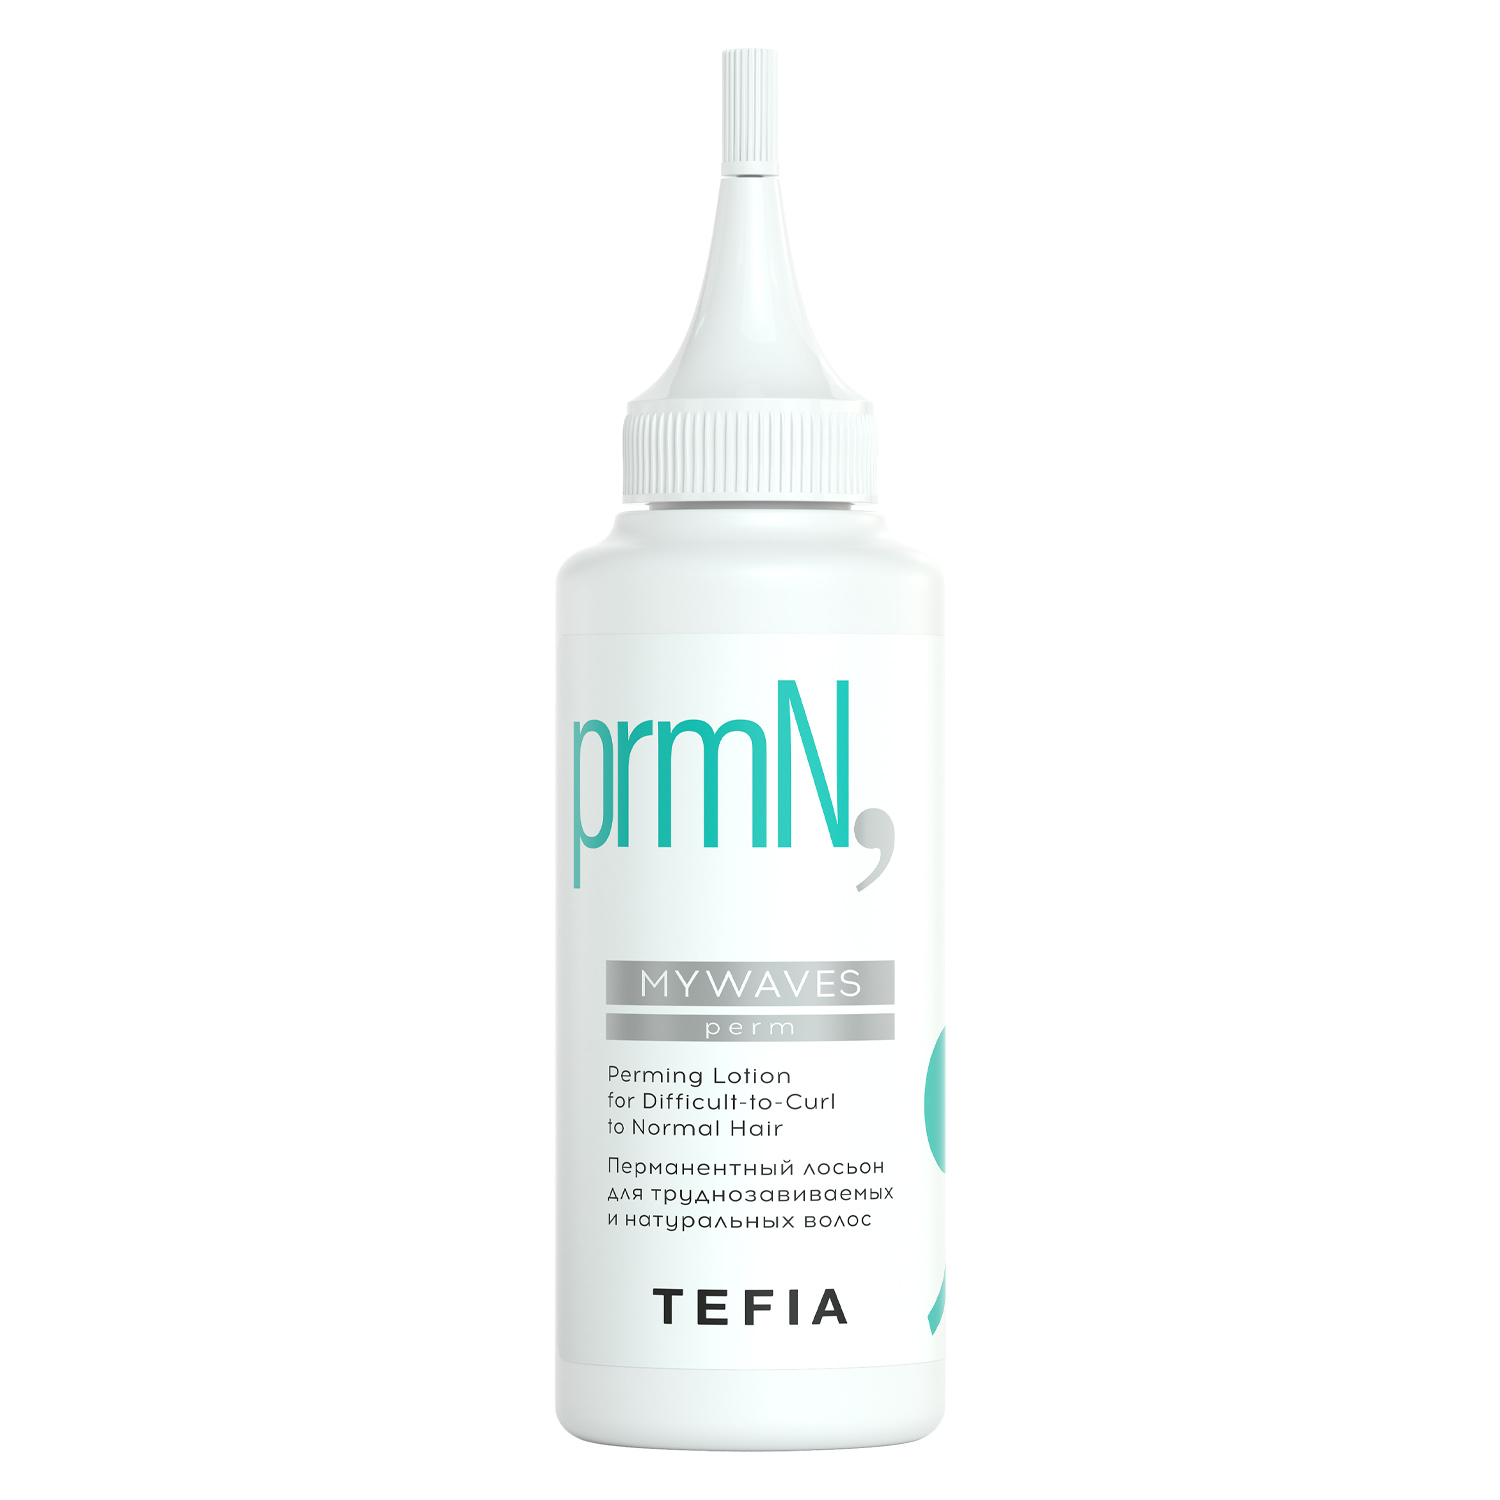 Tefia Перманентный лосьон для труднозавиваемых и натуральных волос, 120 мл (Tefia, Mywaves)